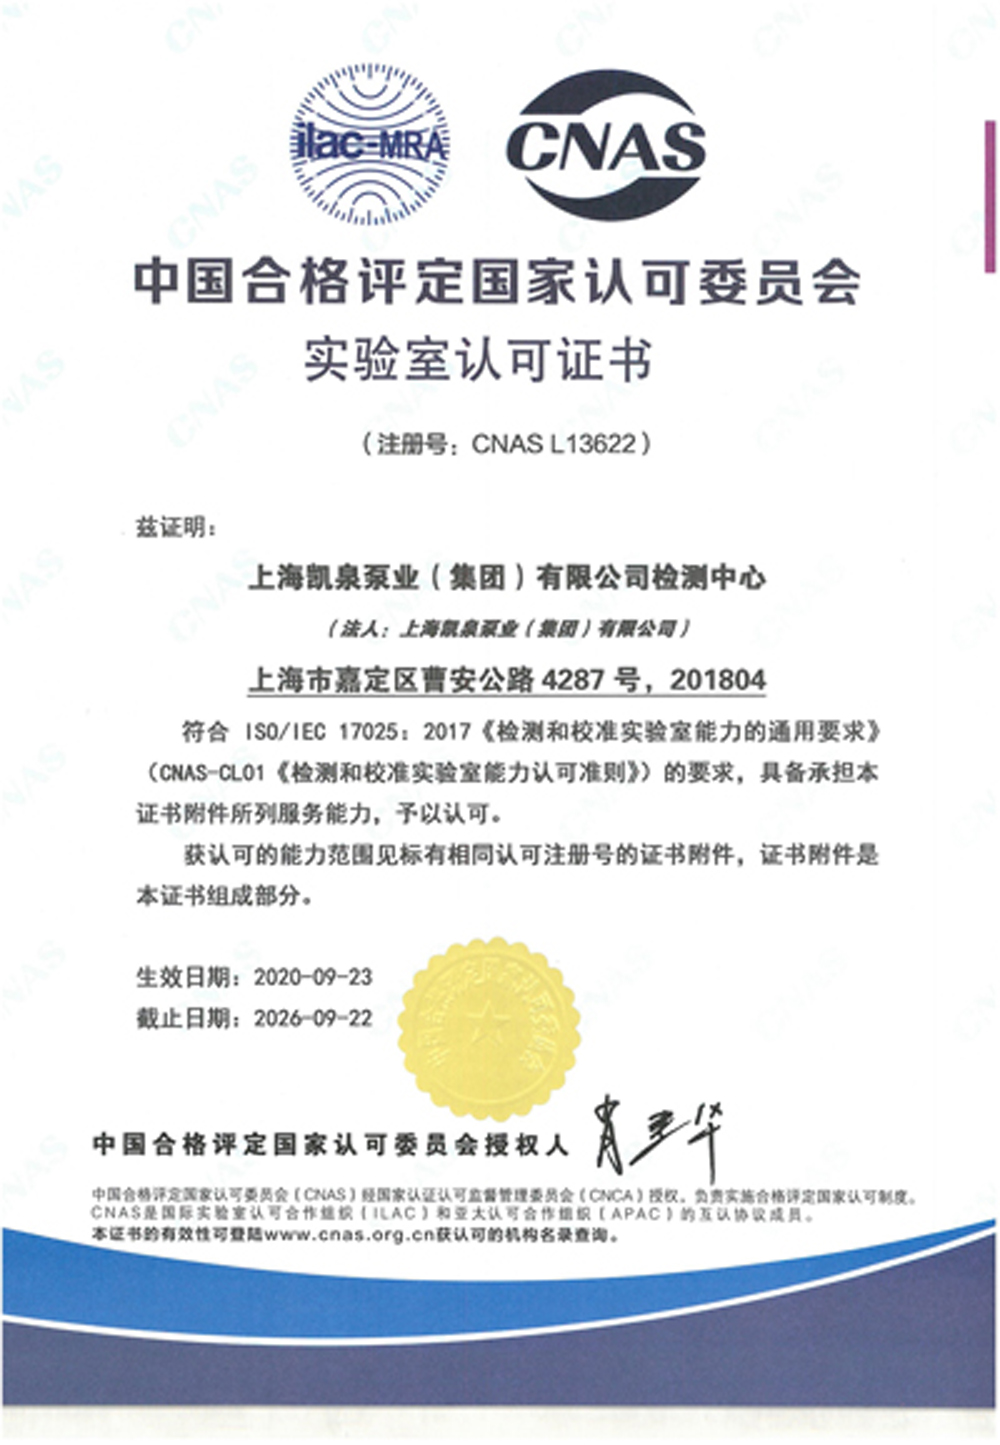 上海凯泉-cnas证书中文版-有效期至20260922